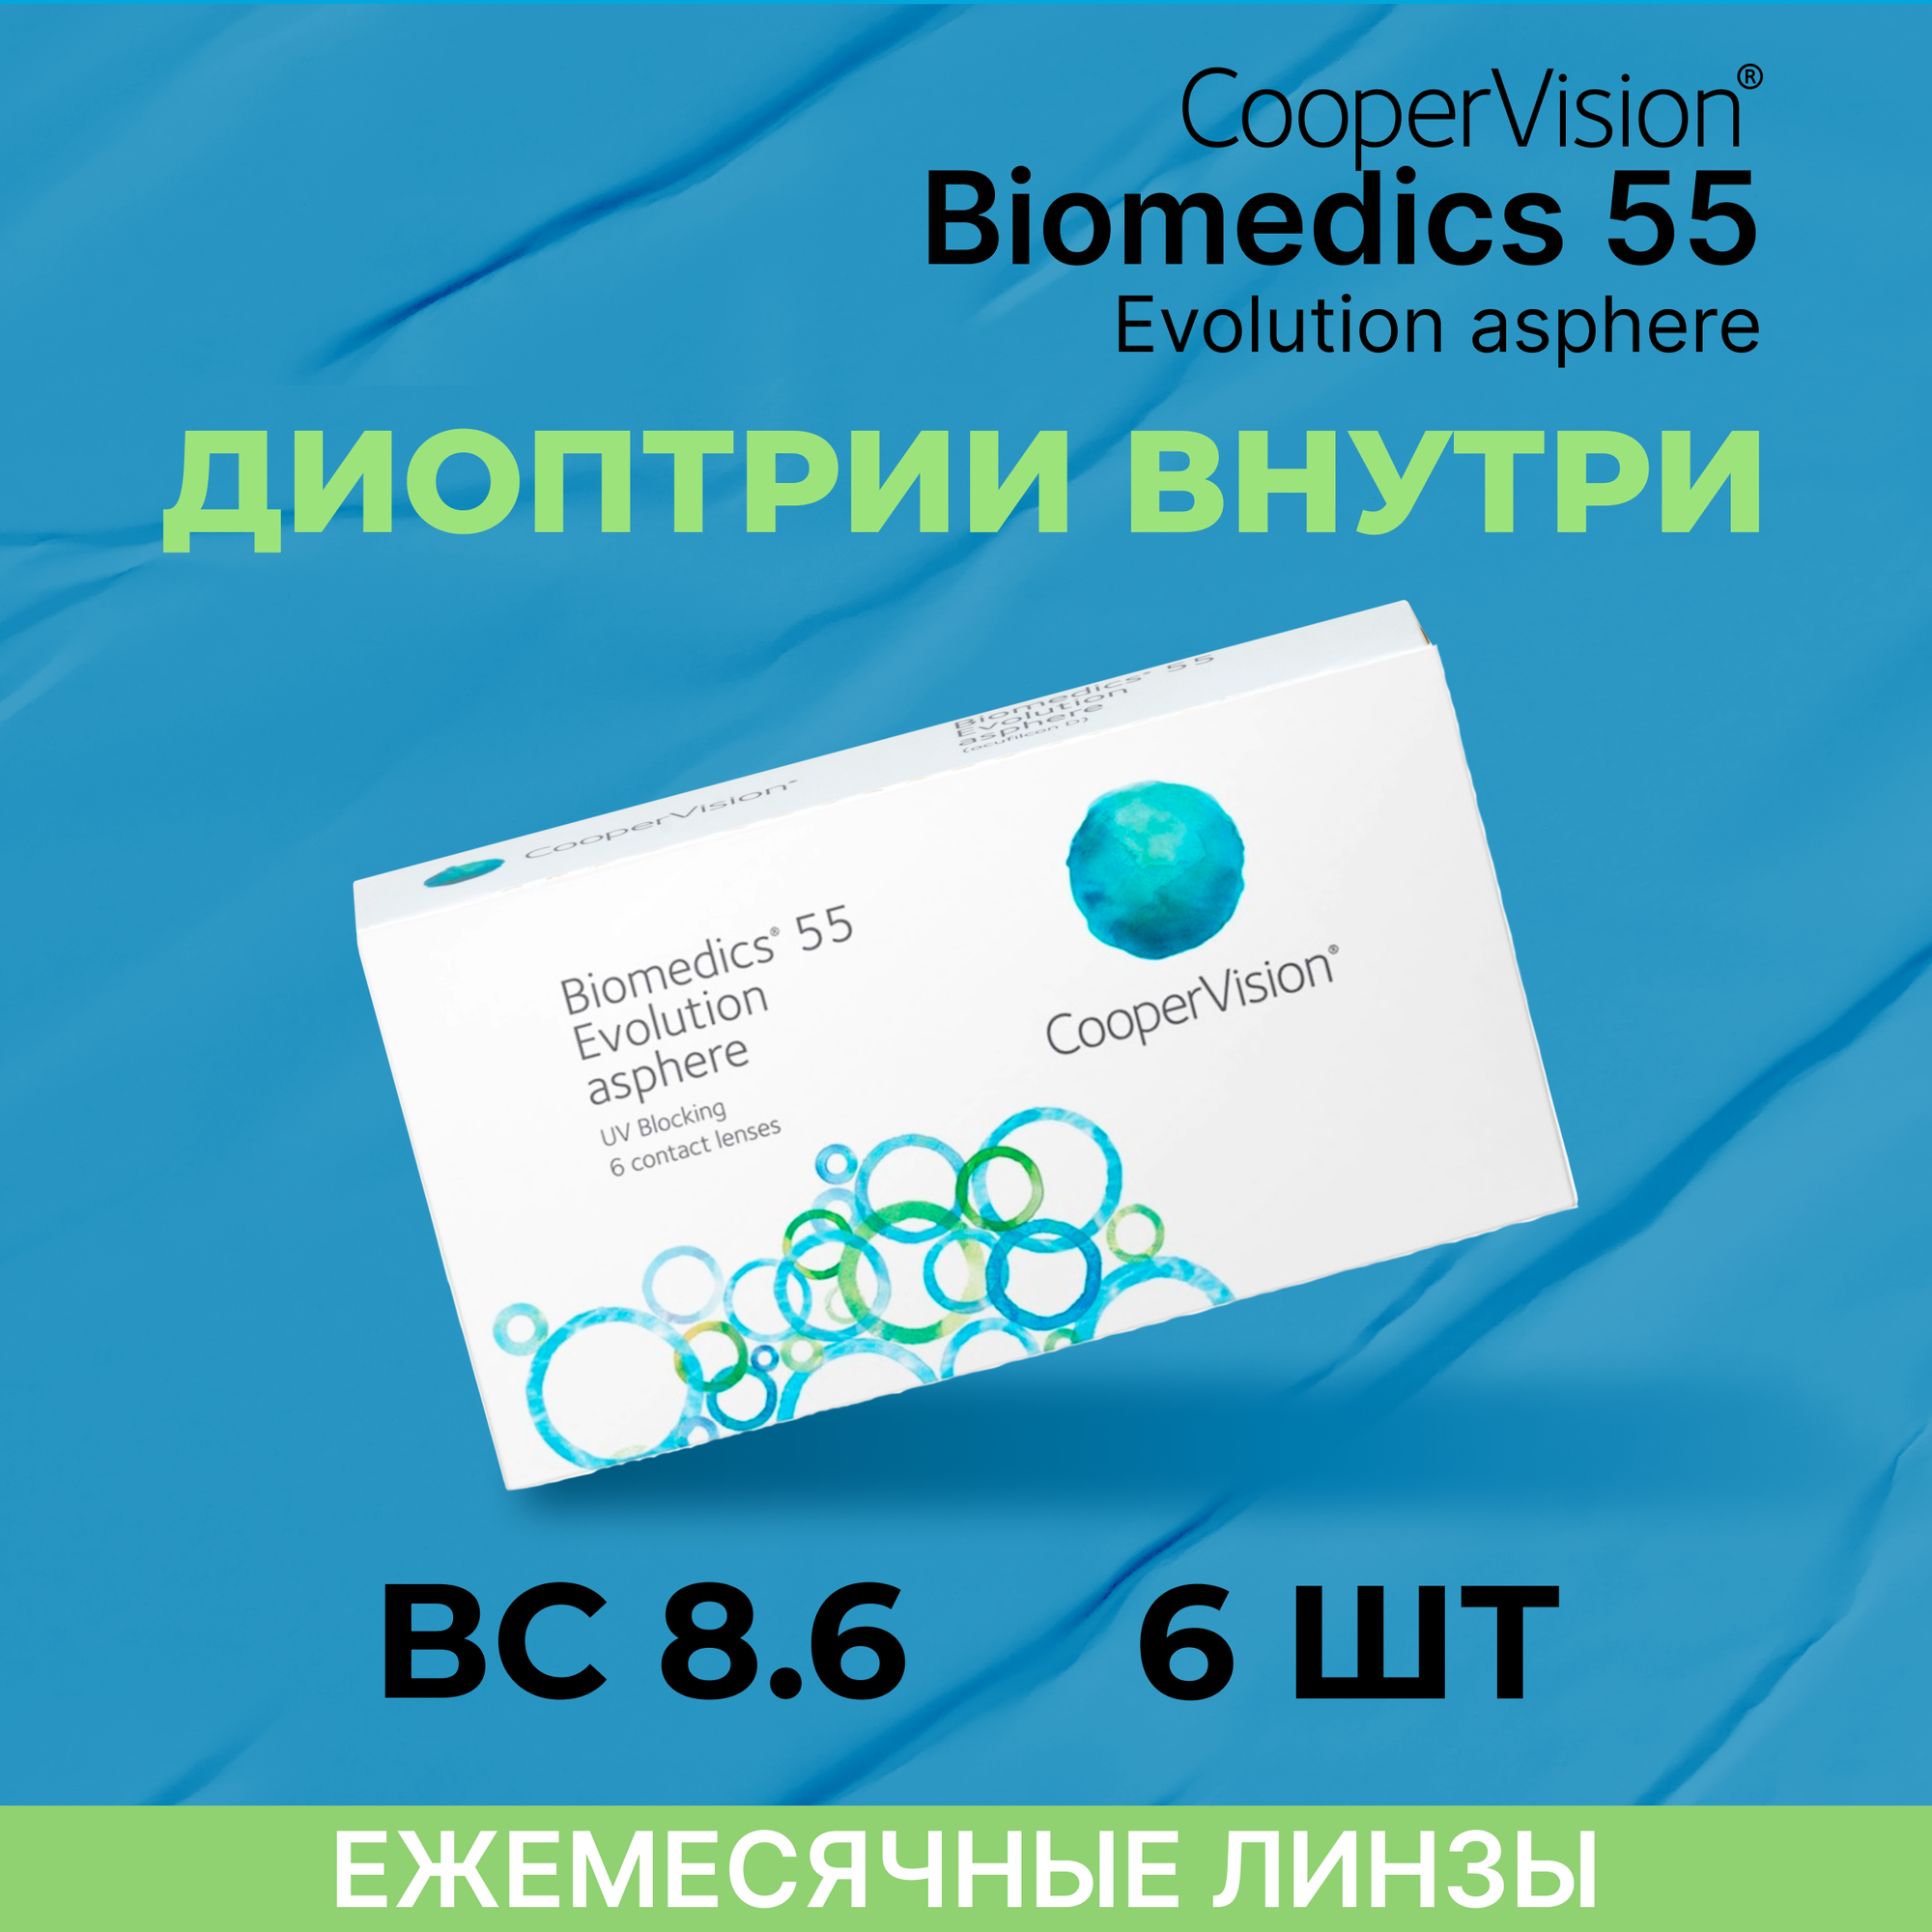 Контактные линзы CooperVision Biomedics 55 Evolution Asphere (6 линз) -2.75 R 8.6, ежемесячные, прозрачные